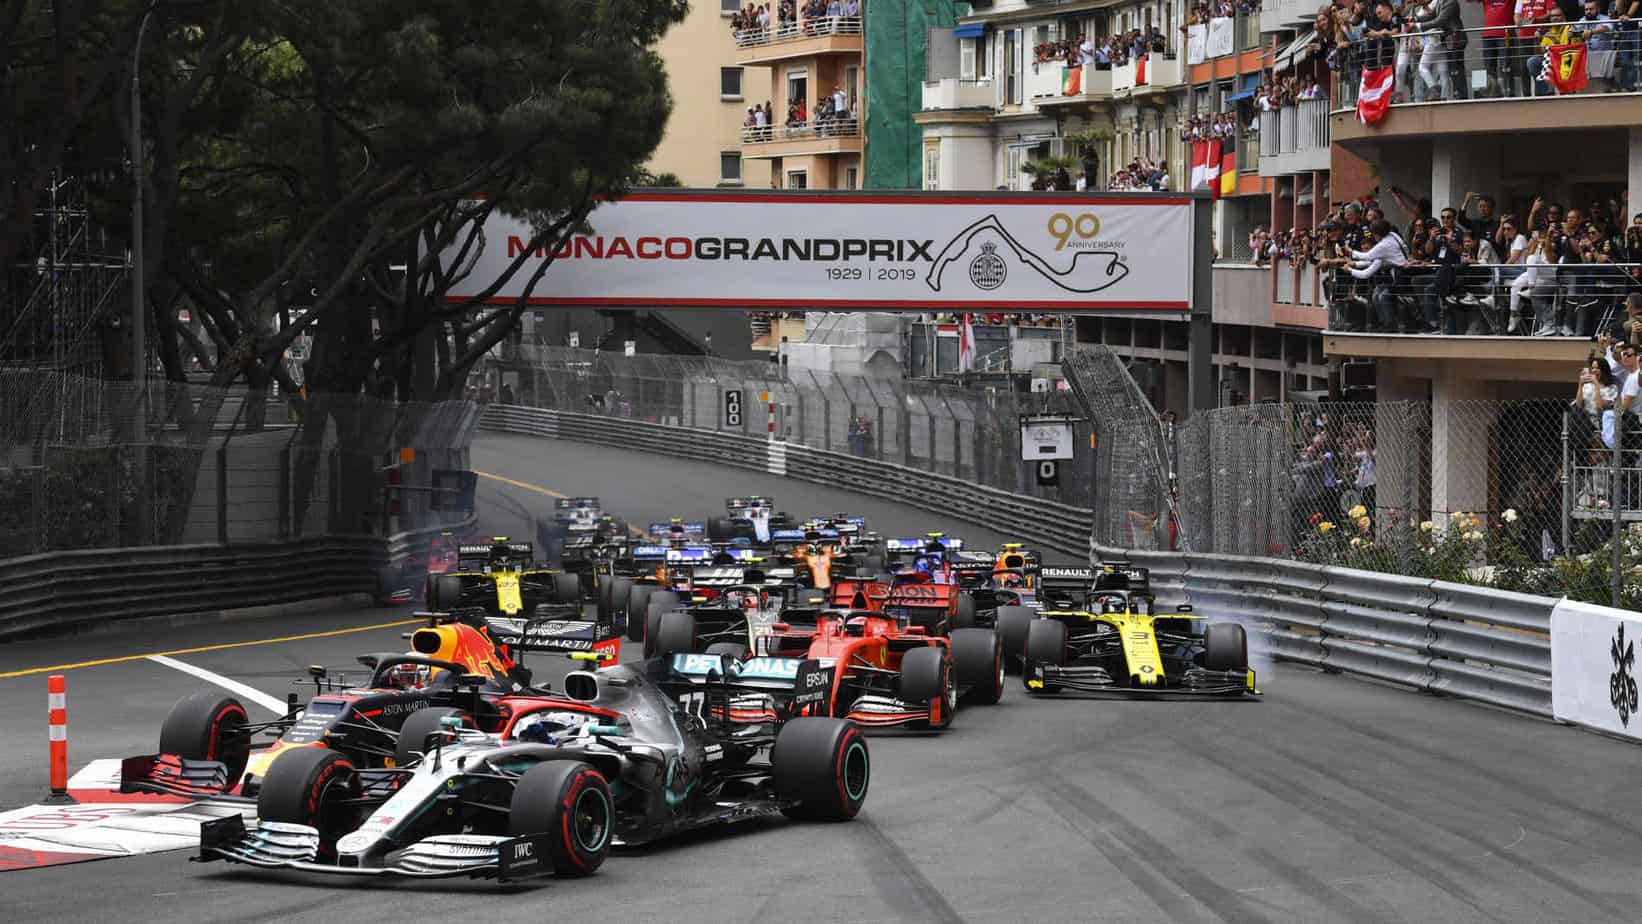 F1 Monaco Grand Prix – Preview and Betting Picks